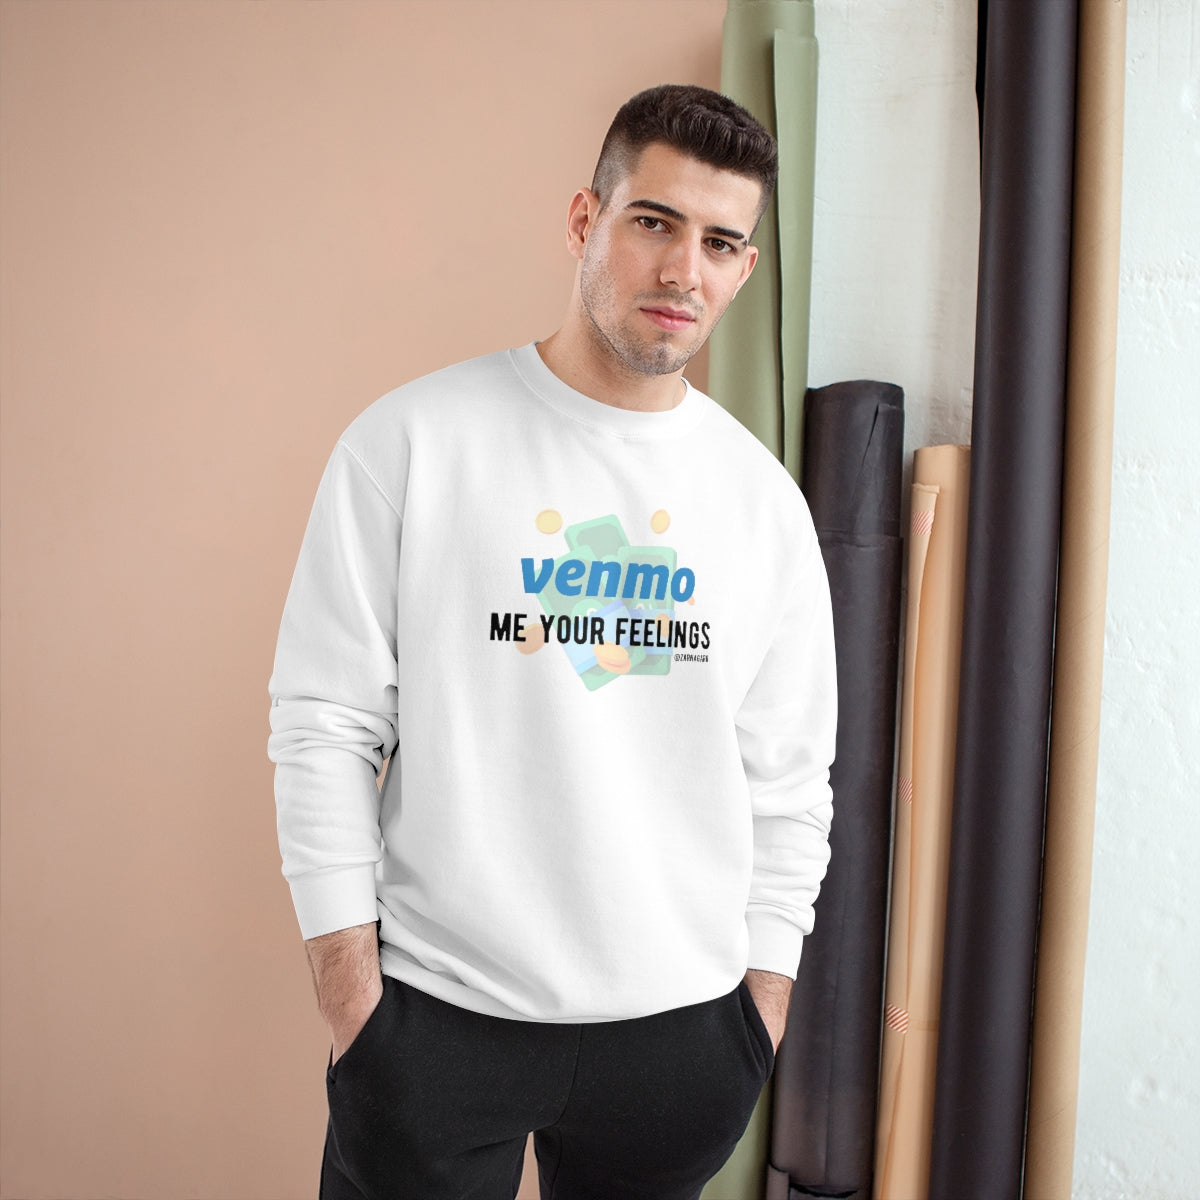 Venmo Me Your Feelings Sweatshirt